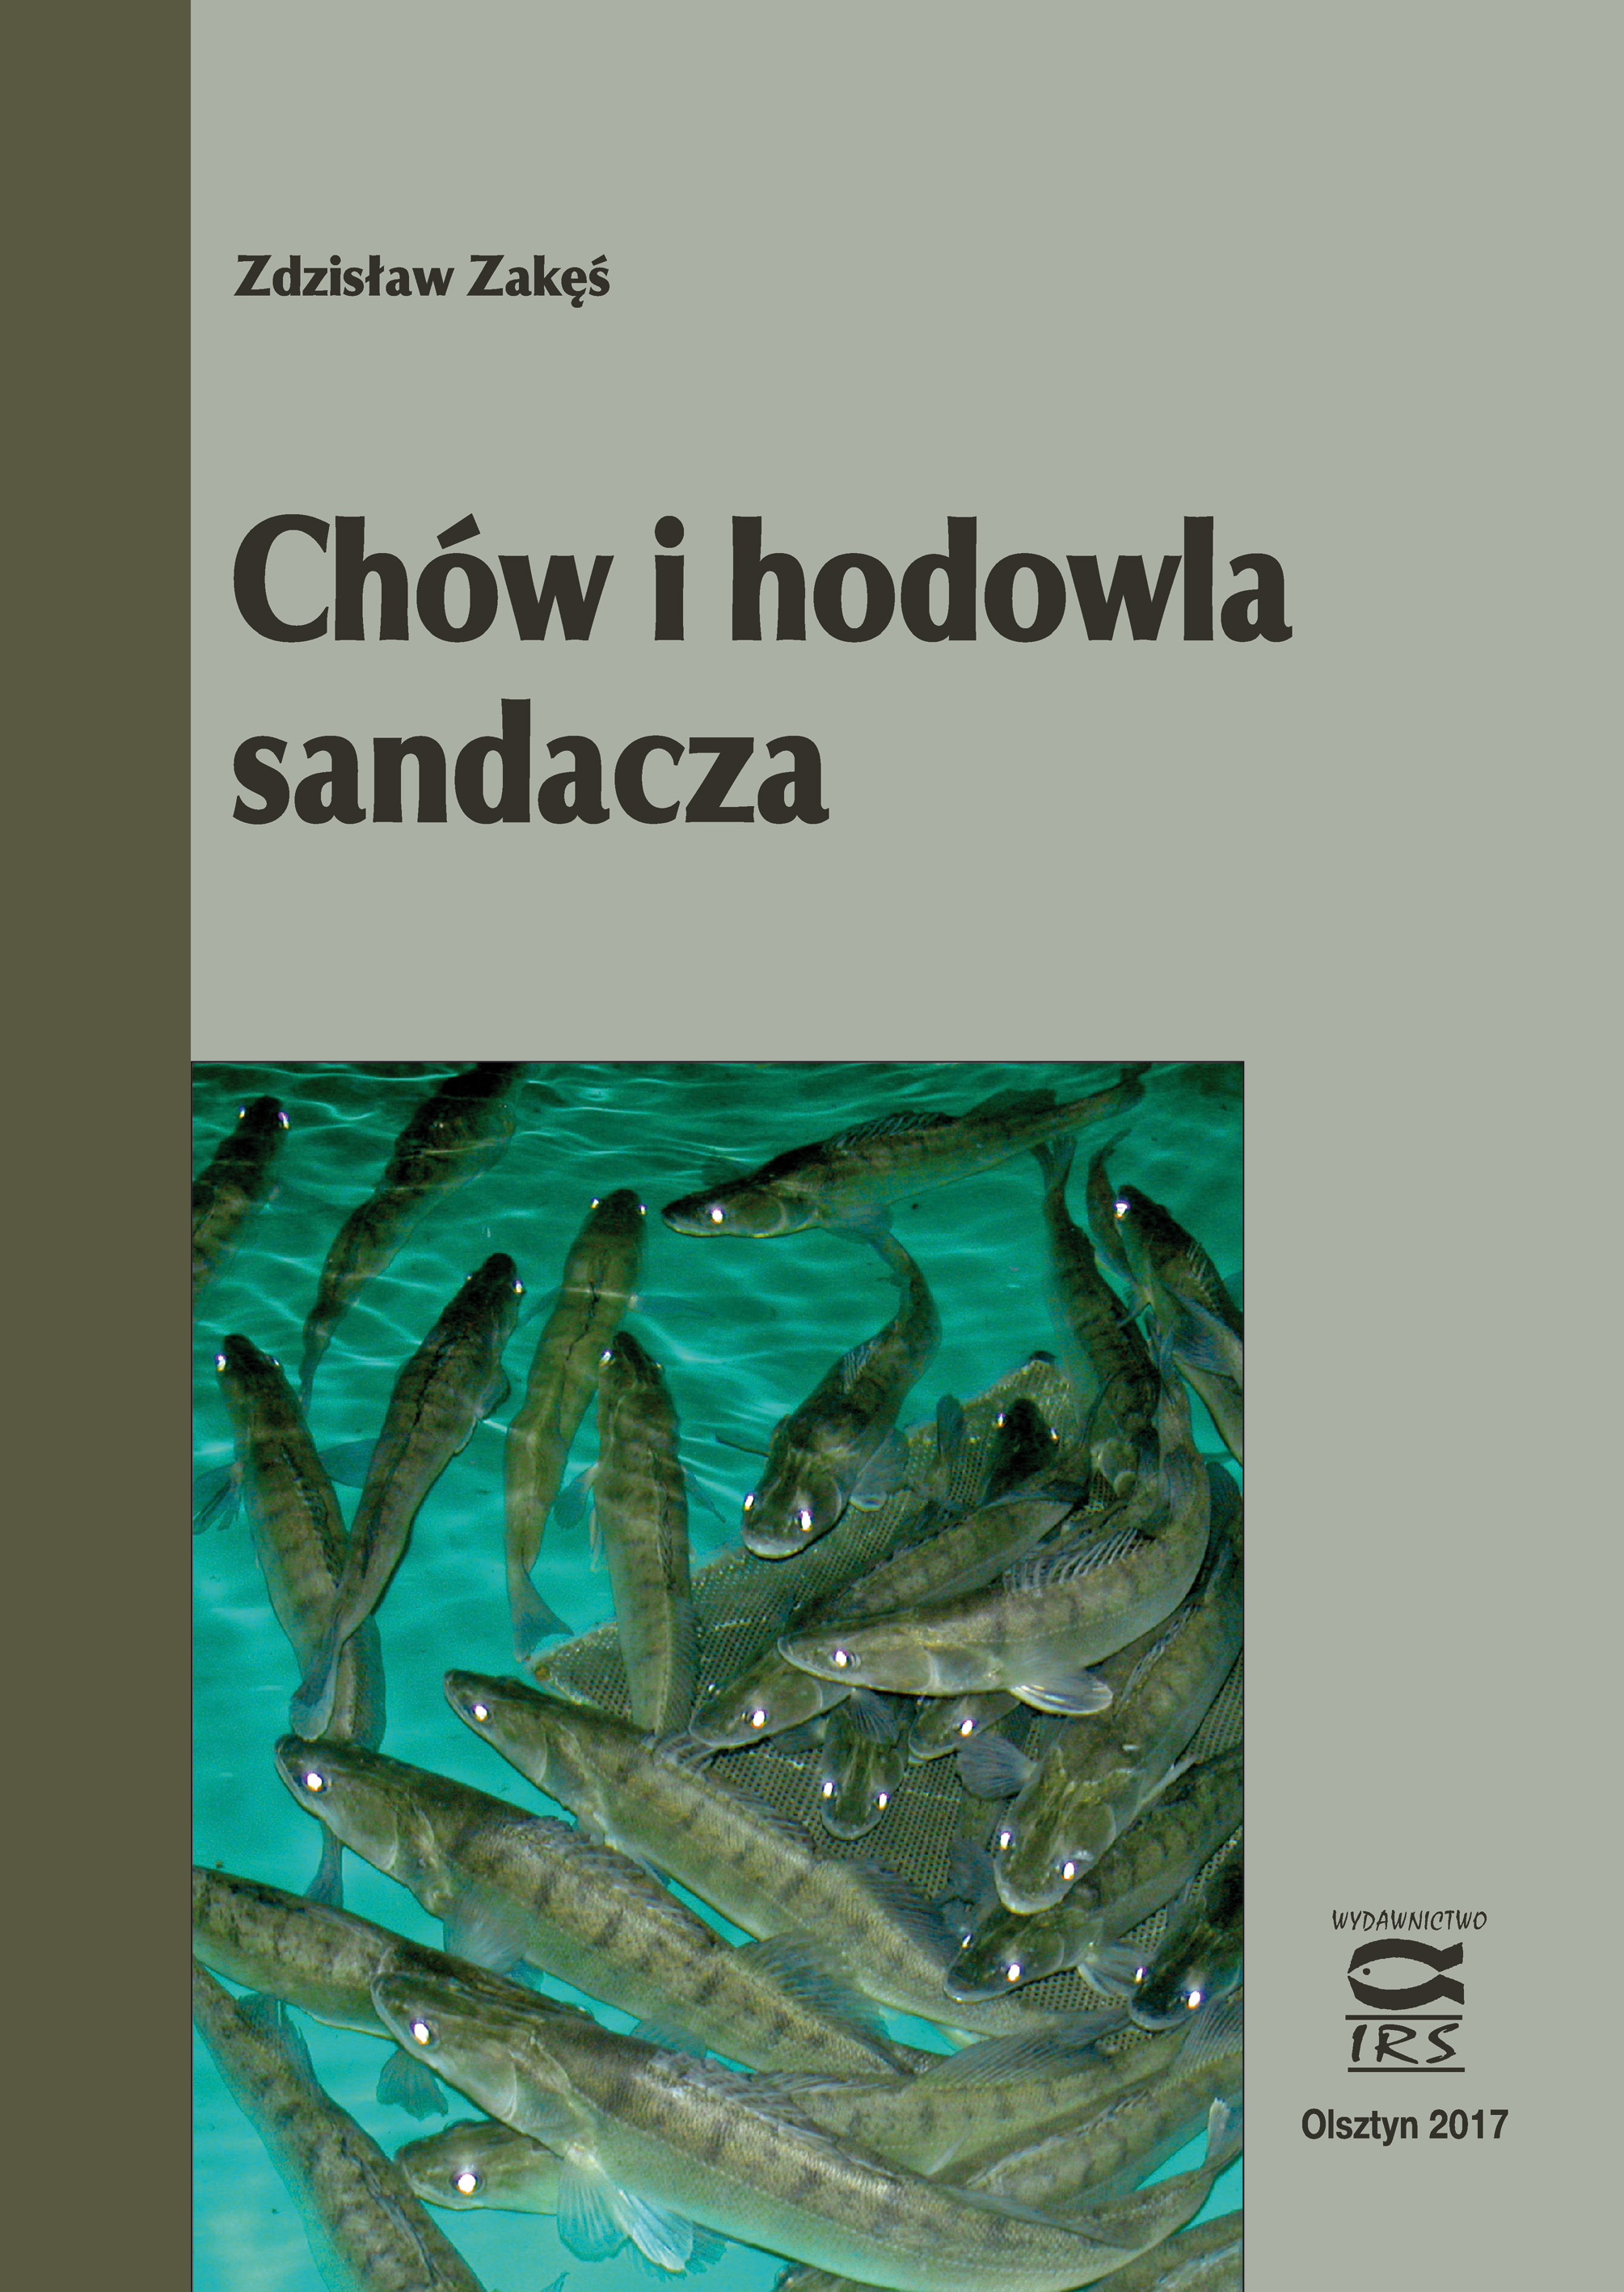 Z. Zakęś, 2009 - SANDACZ. Chów i hodowla. Poradnik hodowcy - Wyd. IRS, s. 203, wydanie I 